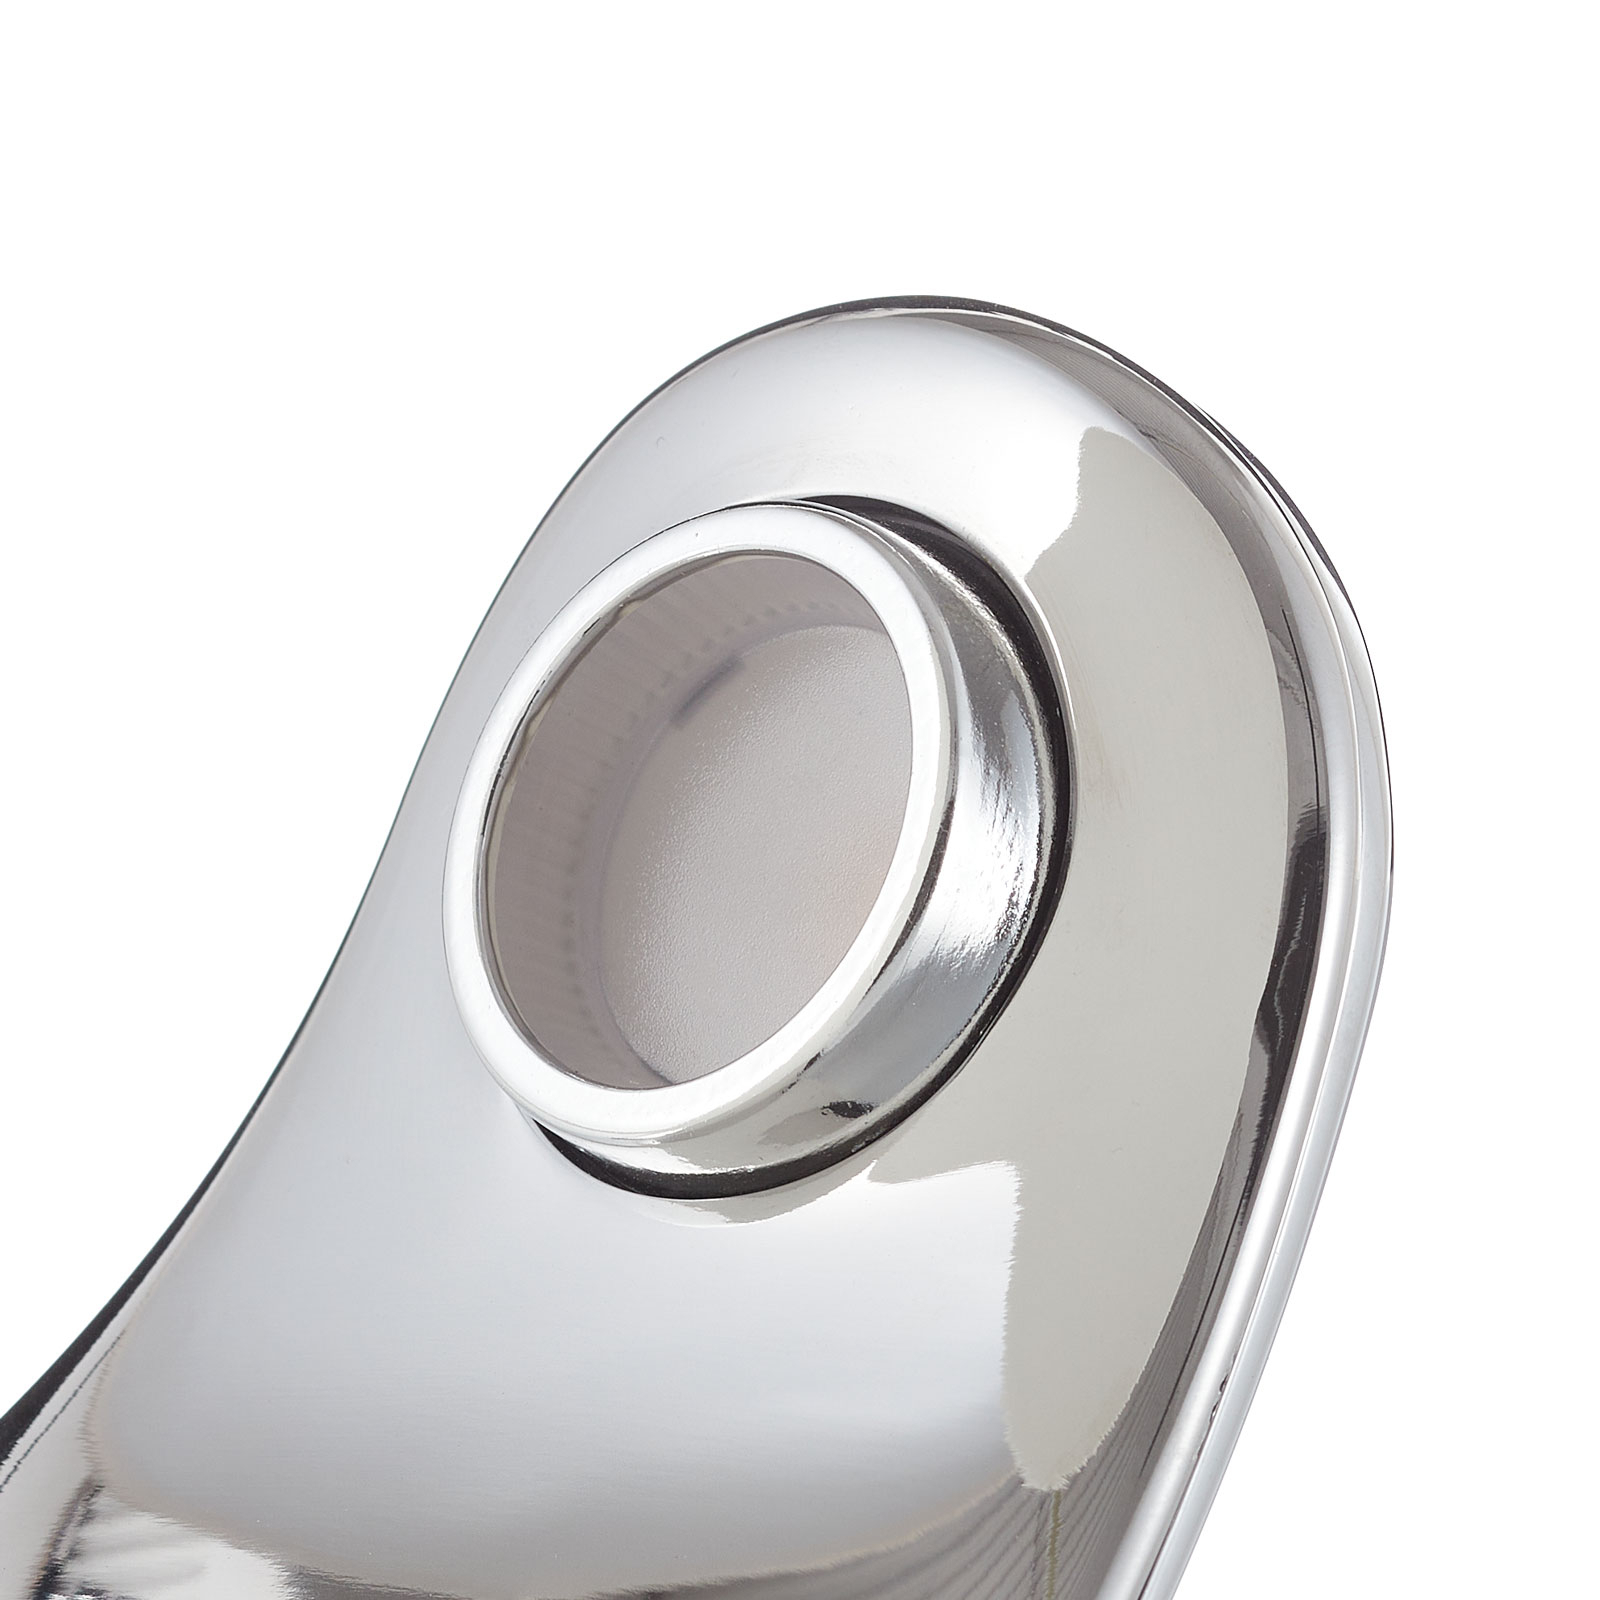 Design-pöytälamppu Curl valkoinen/peili